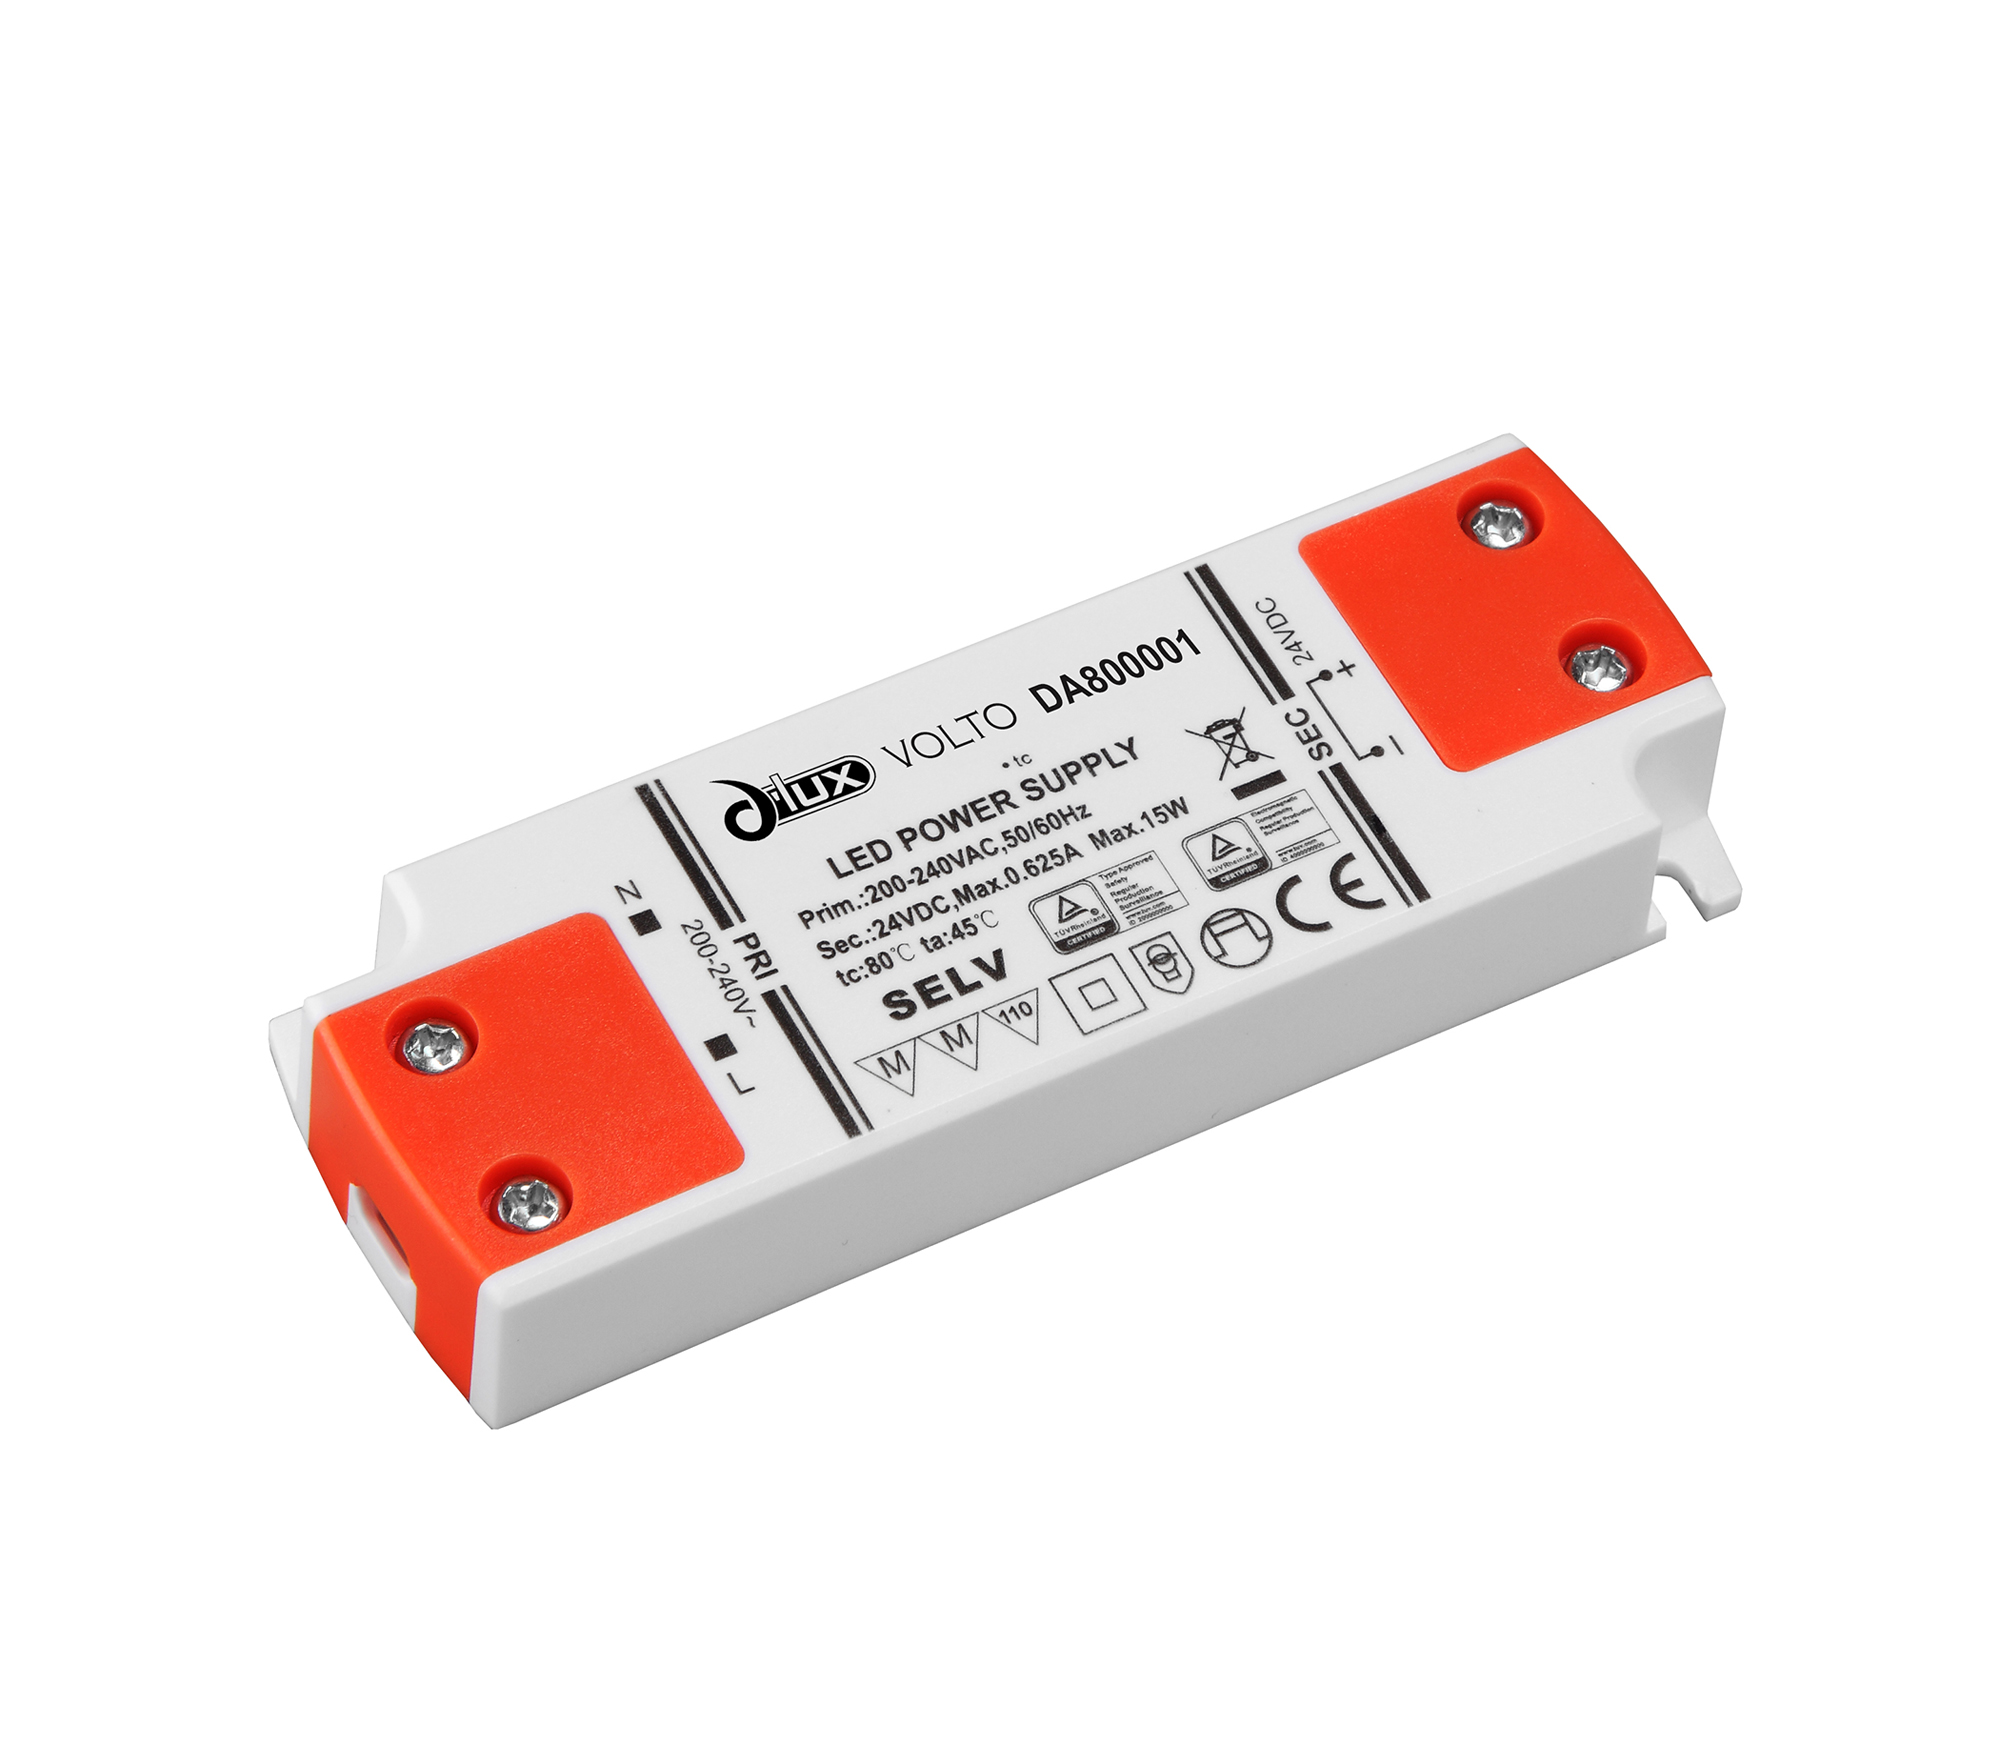 DA800001  Volto, 15W Constant Voltage Non-Dimmable LED Driver, 12VDC